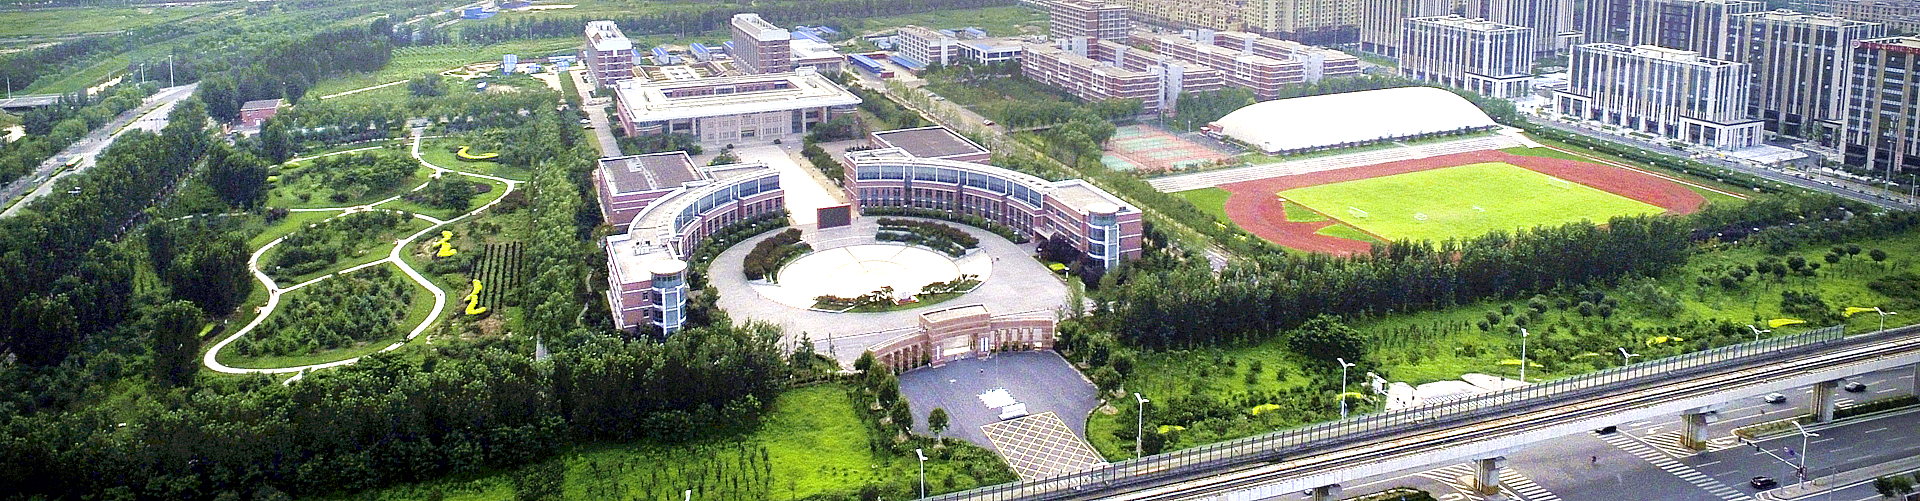 中國社會科學院大學